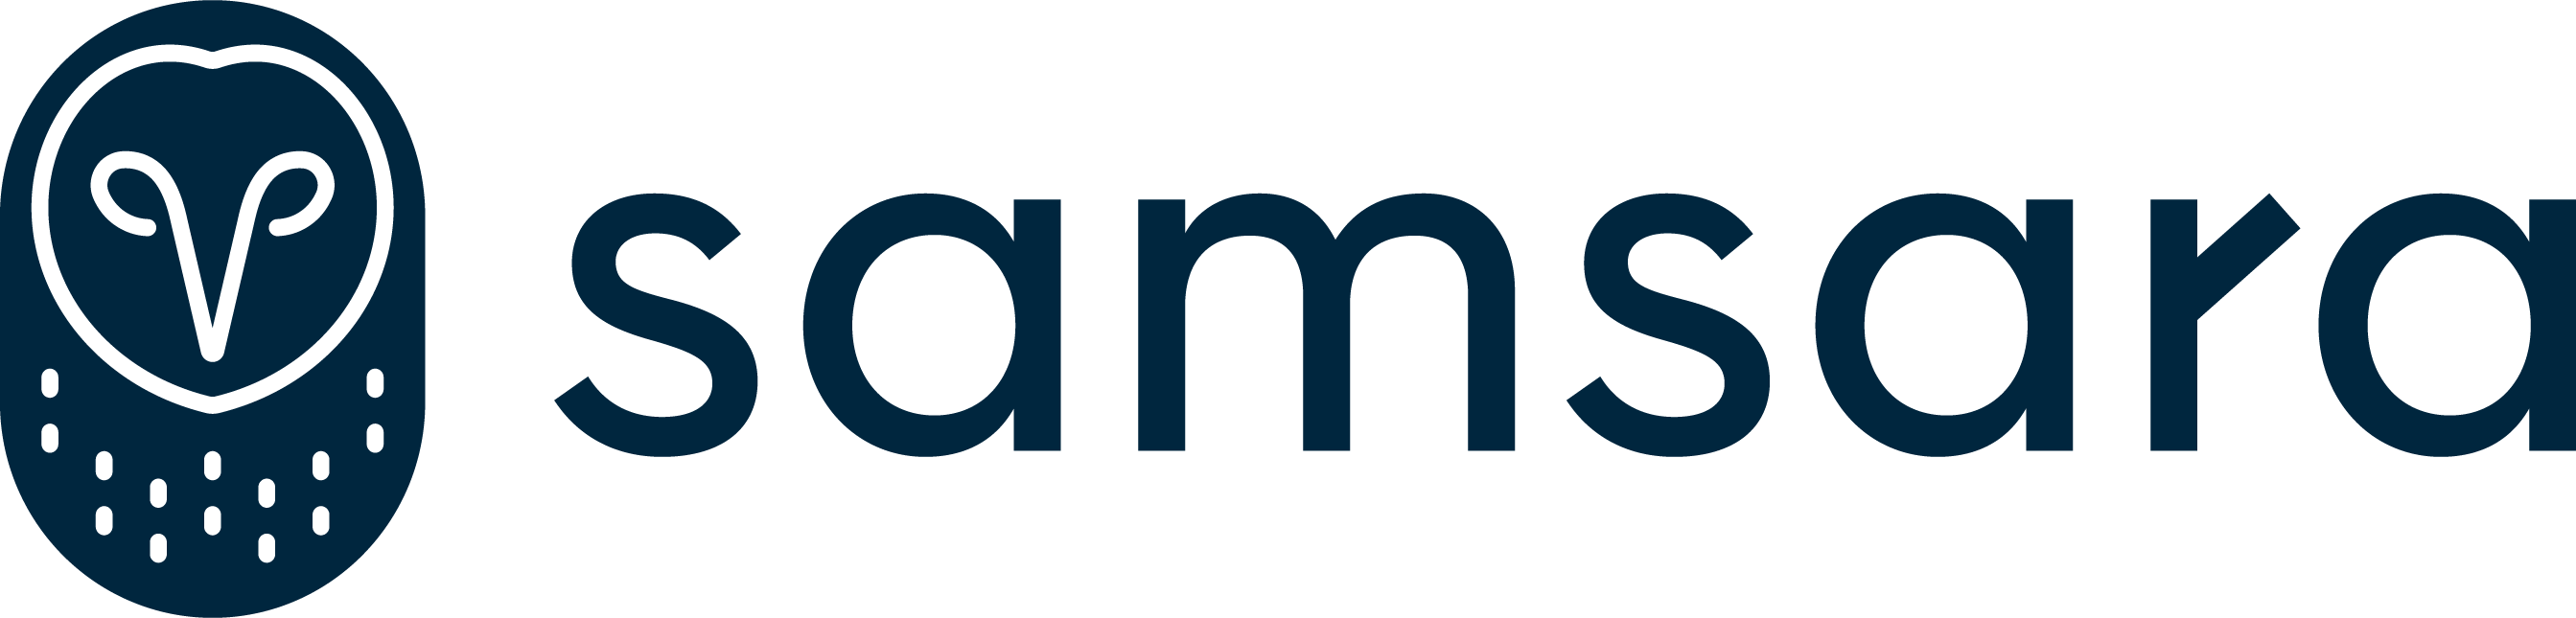 Samsara Logo png